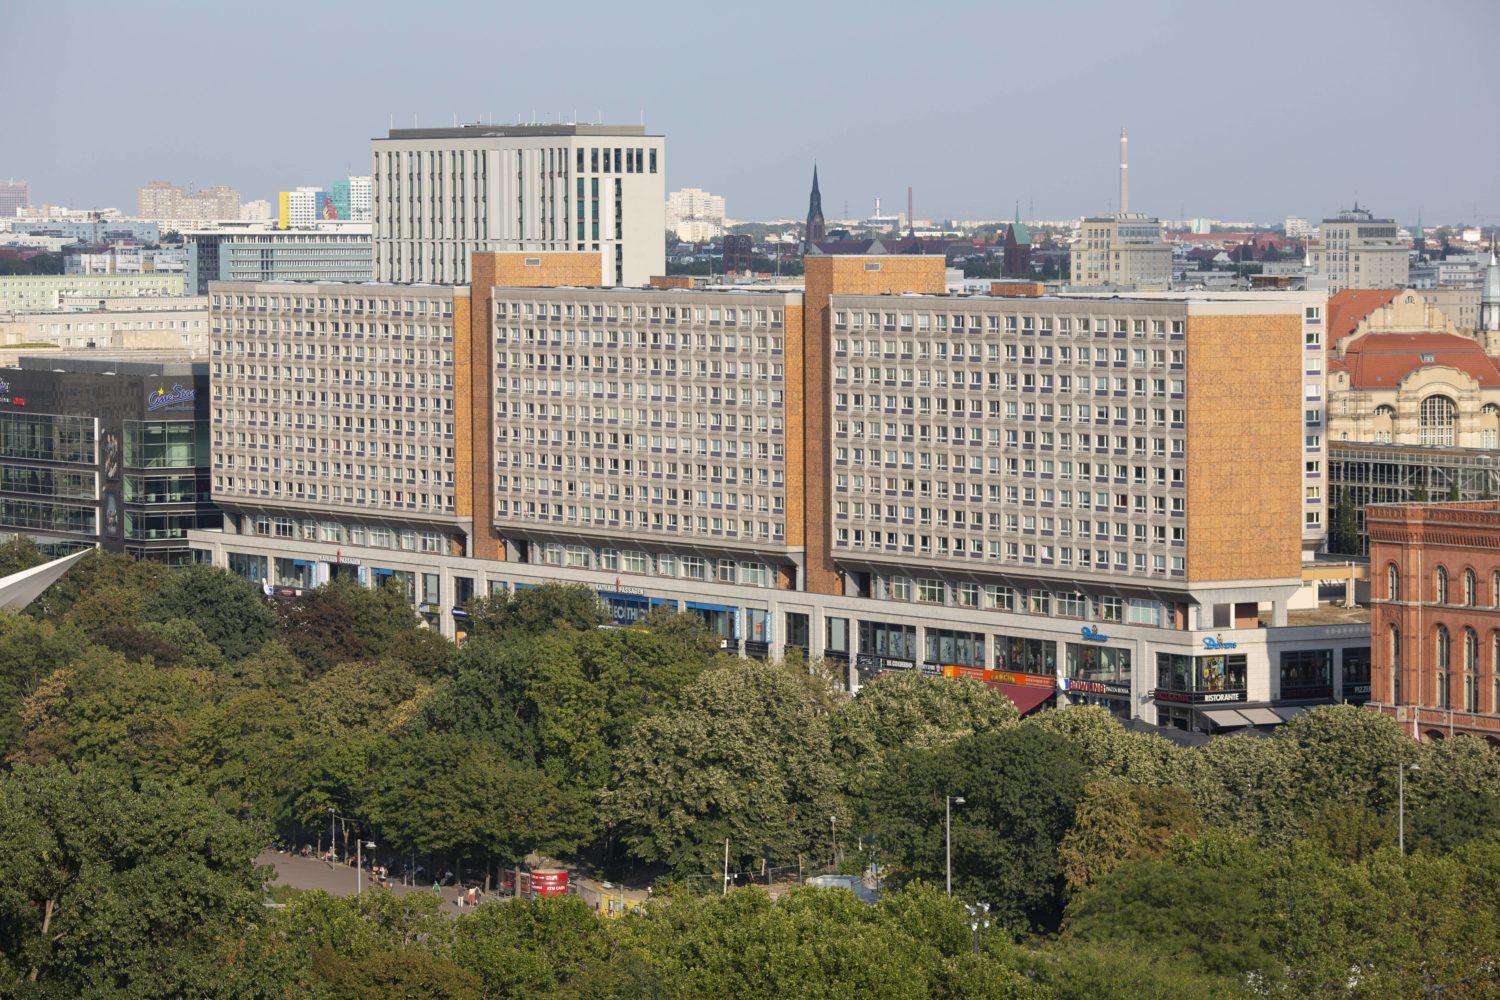 DDR-Architekten in Berlin: Heinz Graffunder ließ sich für seine Rathauspassagen von Le Corbusier inspirieren. Foto: Imago Images/Dirk Sattler